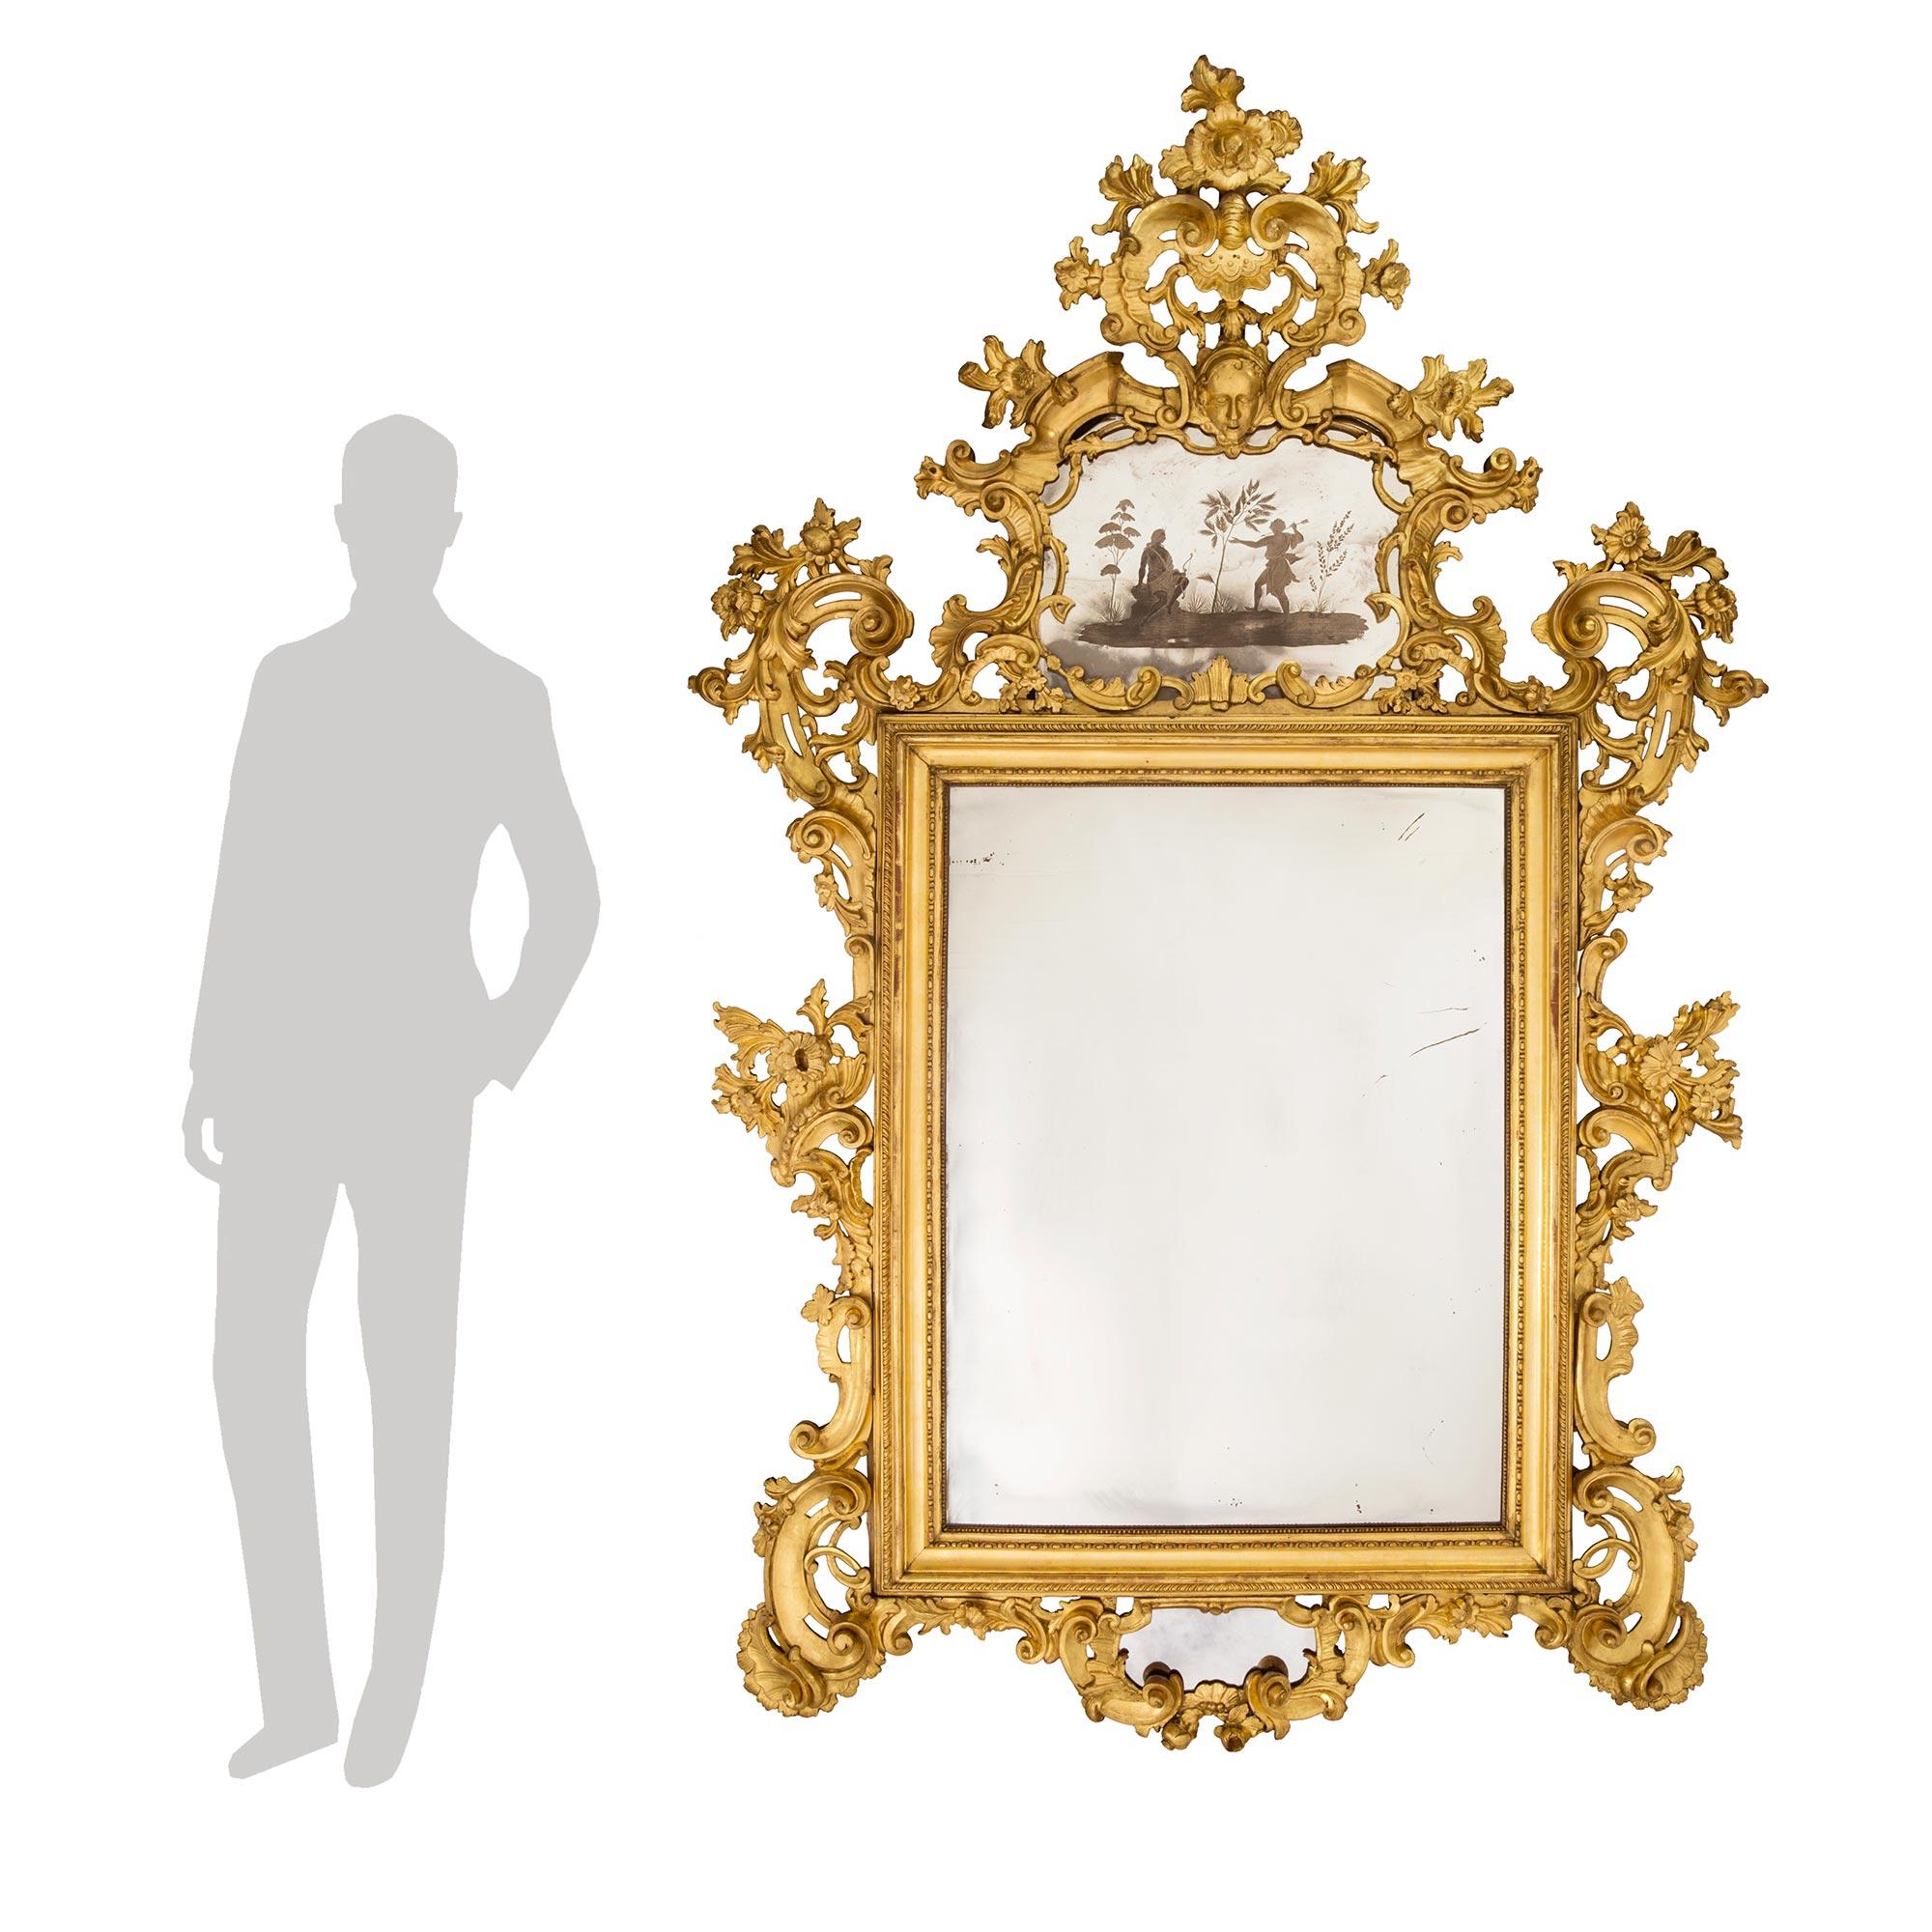 Un magnifique miroir vénitien italien du 18ème siècle en bois doré. Ce miroir finement sculpté présente des plaques de miroir d'origine et est somptueusement orné de rinceaux et de guirlandes. En bas, un miroir se trouve au milieu de bois doré à